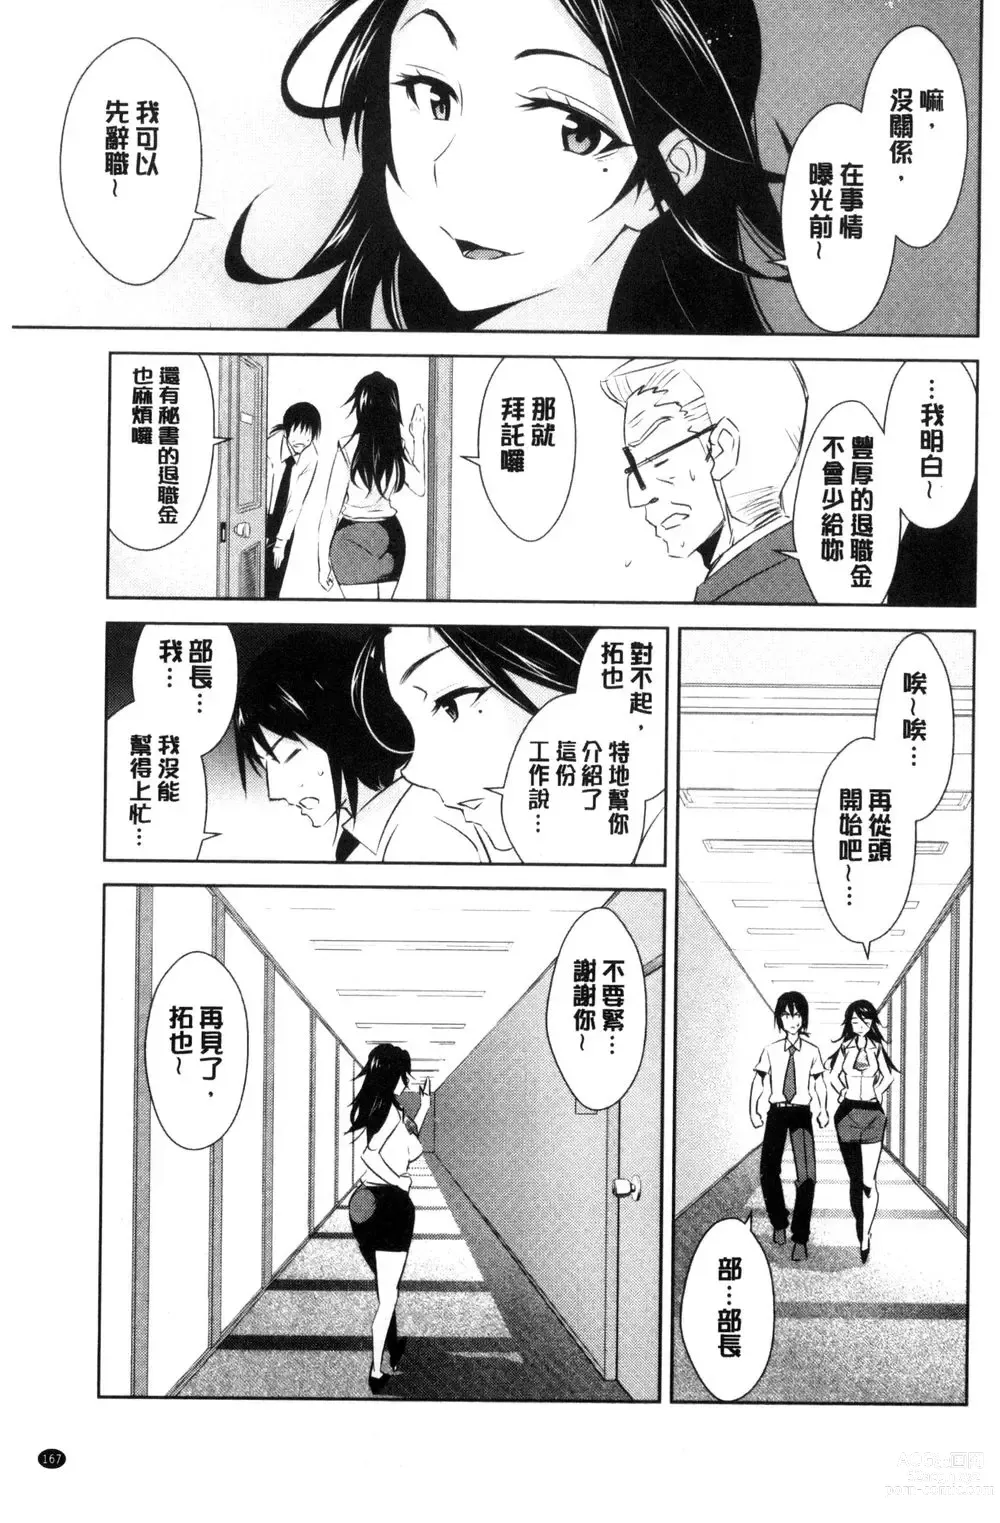 Page 169 of doujinshi ともだちっくす